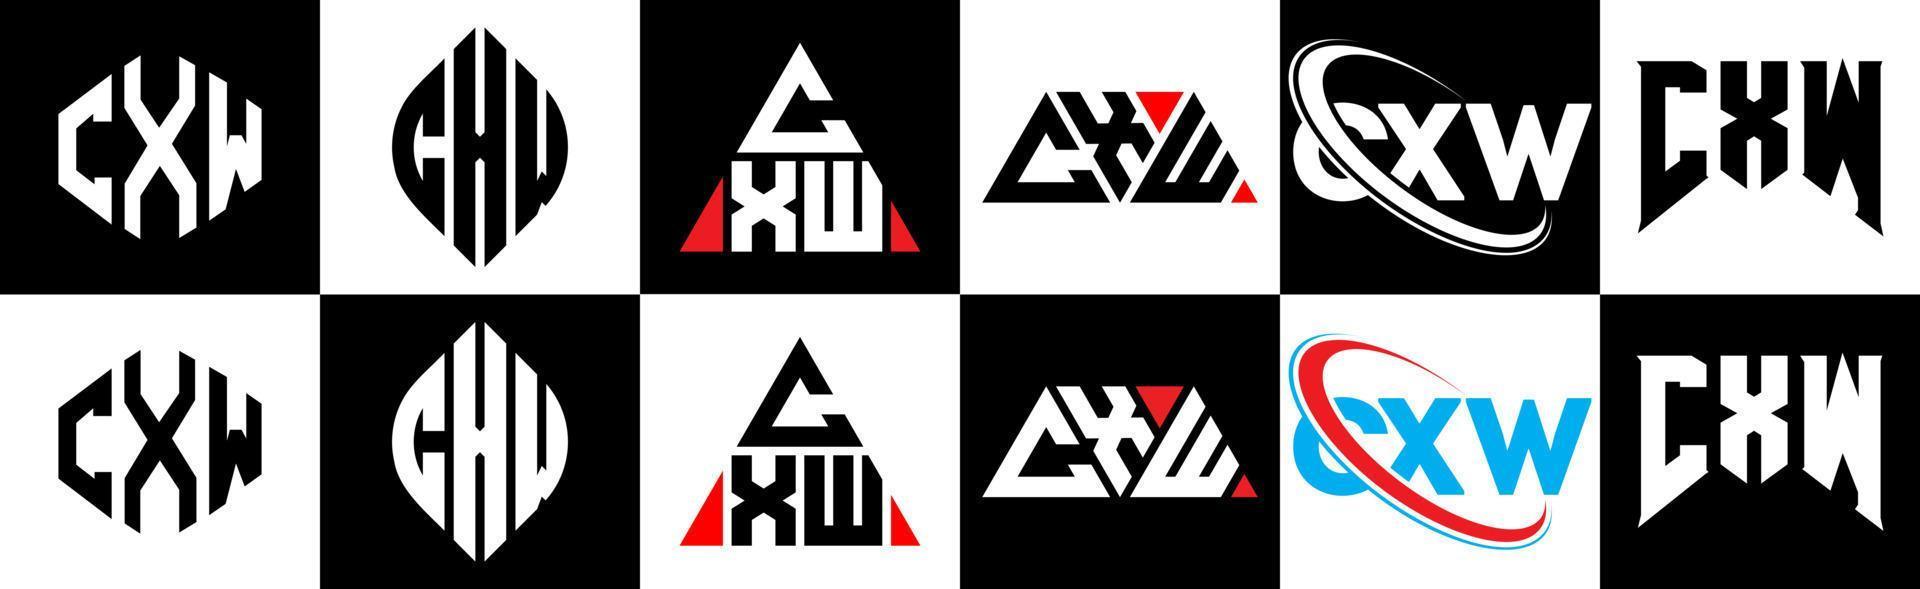 design de logotipo de carta cxw em seis estilo. polígono cxw, círculo, triângulo, hexágono, estilo plano e simples com logotipo de carta de variação de cor preto e branco definido em uma prancheta. cxw logotipo minimalista e clássico vetor